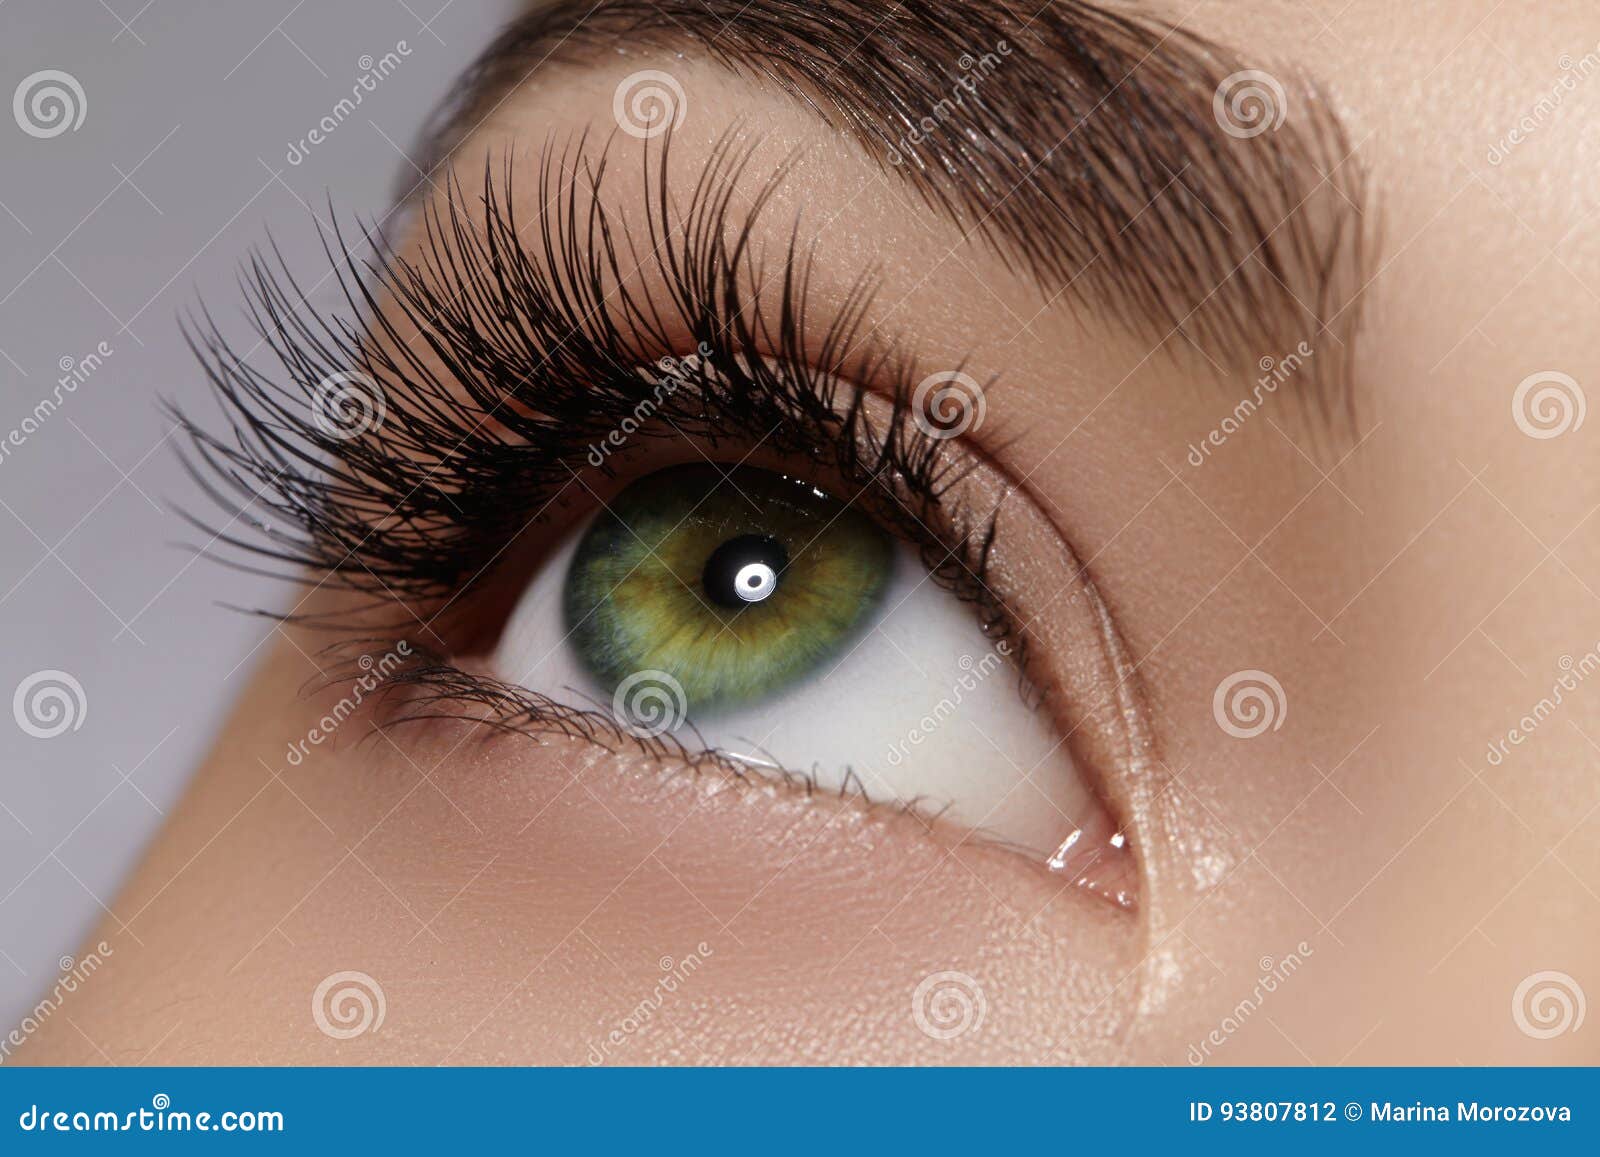 beautiful female eye with extreme long eyelashes, black liner makeup. perfect make-up, long lashes. closeup fashion eyes